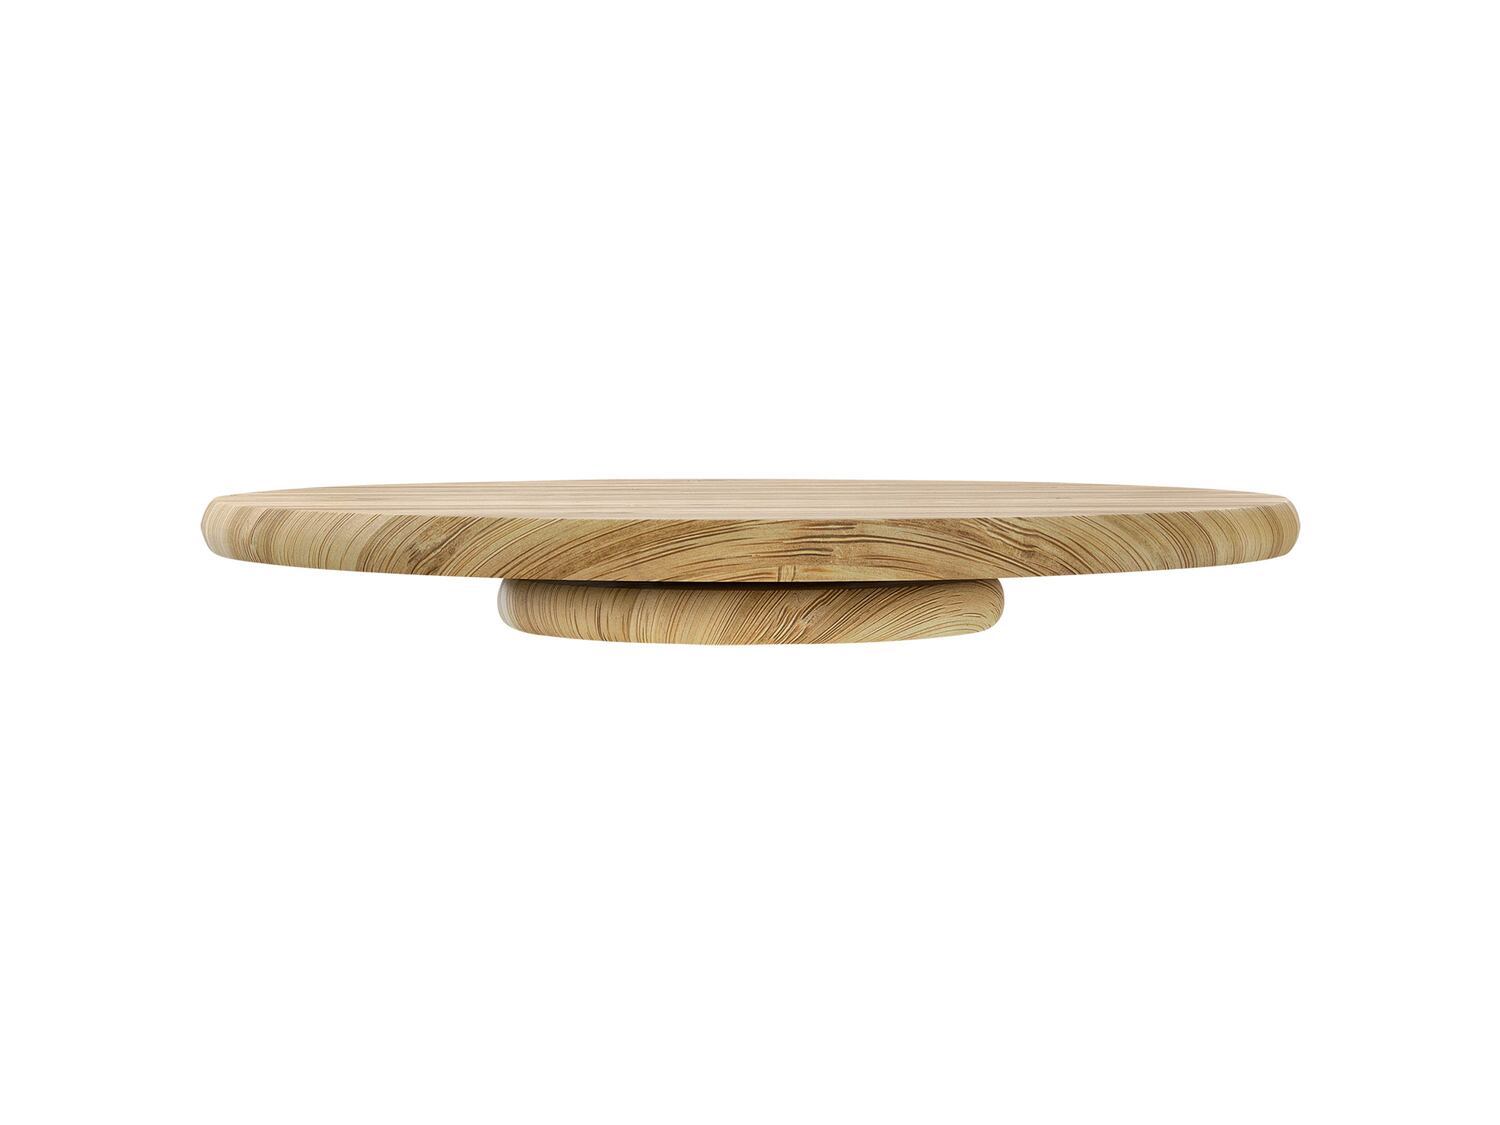 Obrotowy talerz do serwowania z drewna bambusowego Ernesto, cena 27,99 PLN 
- ok. ...